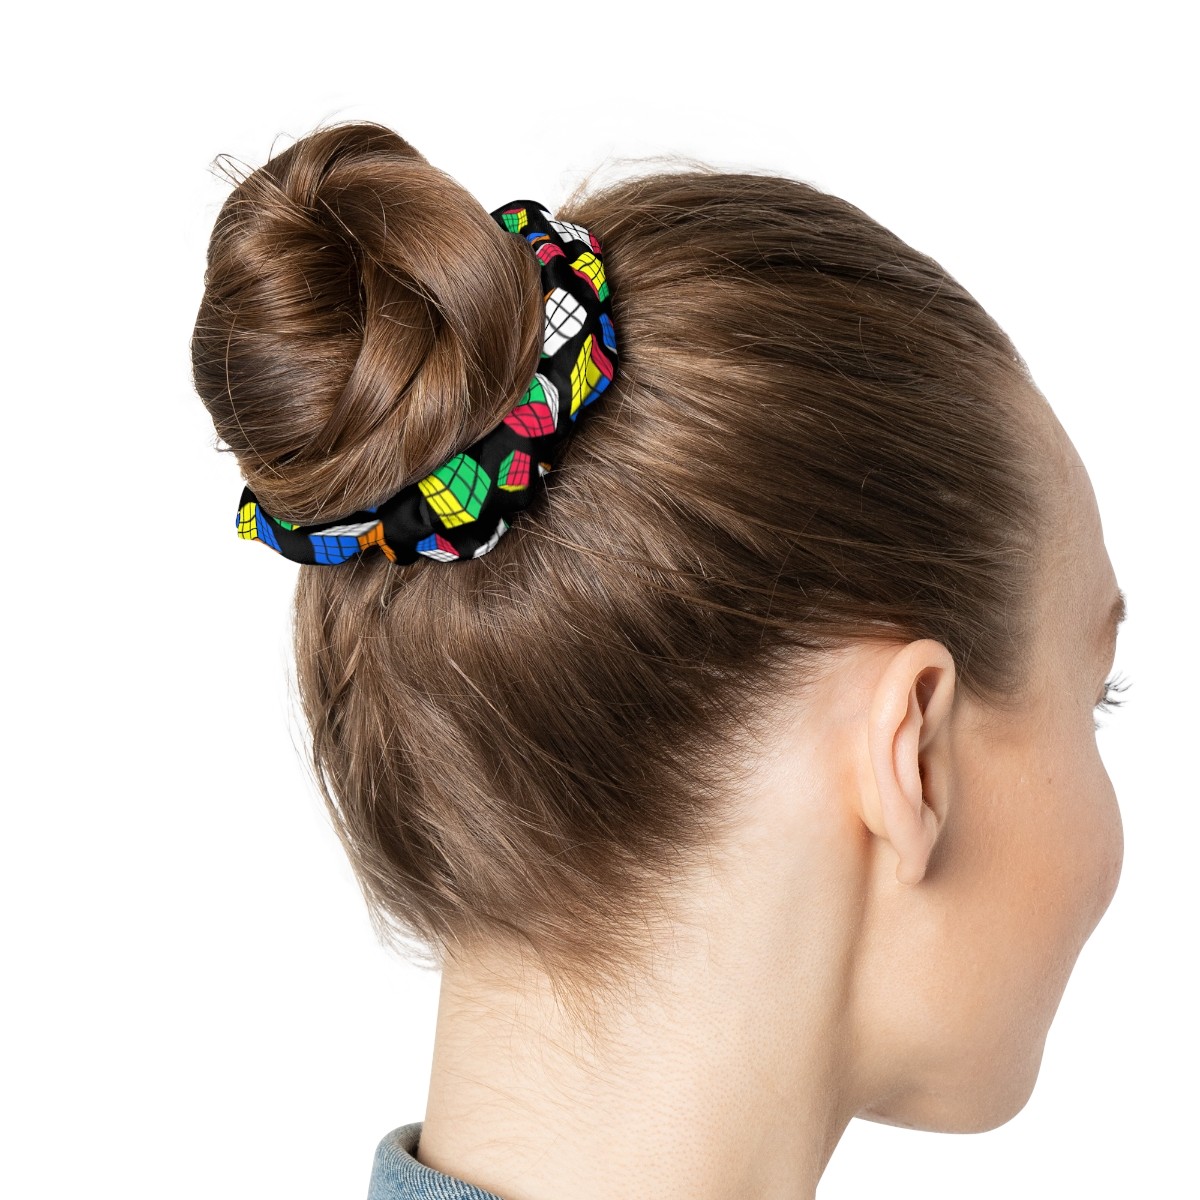  Cartoon Headband Hair Ties Scrunchie Hair Accessories